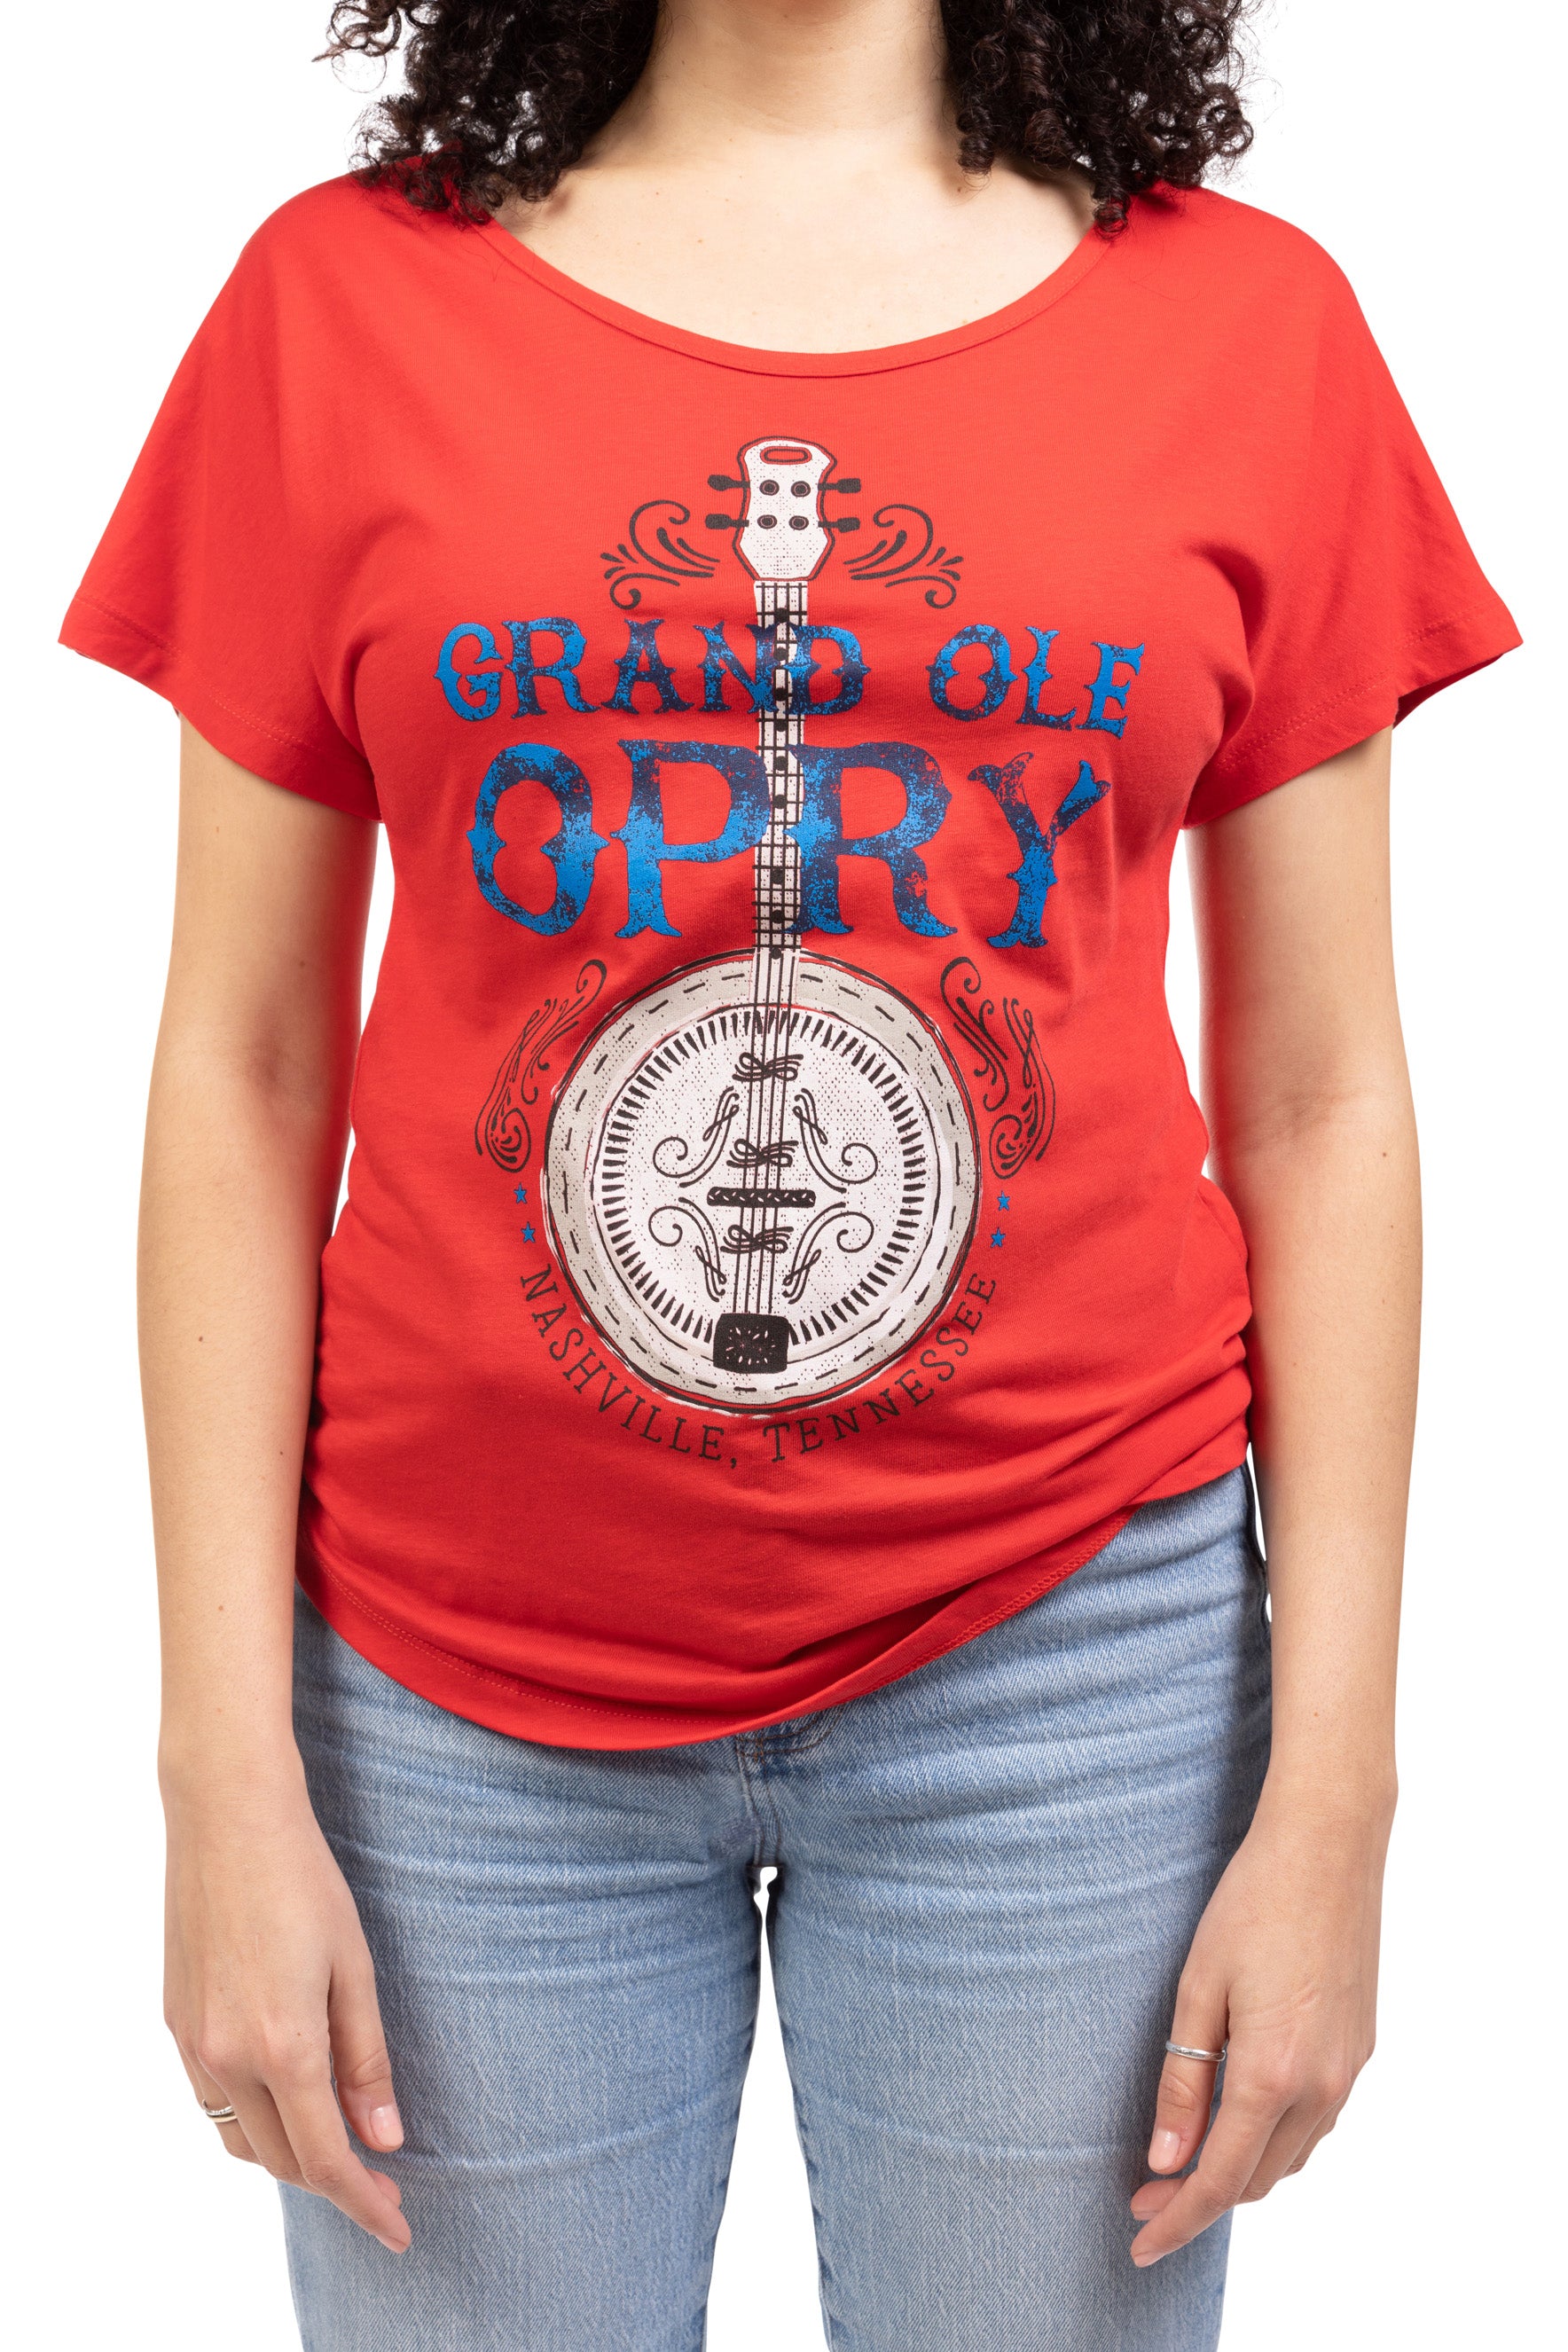 Opry Banjo T-Shirt